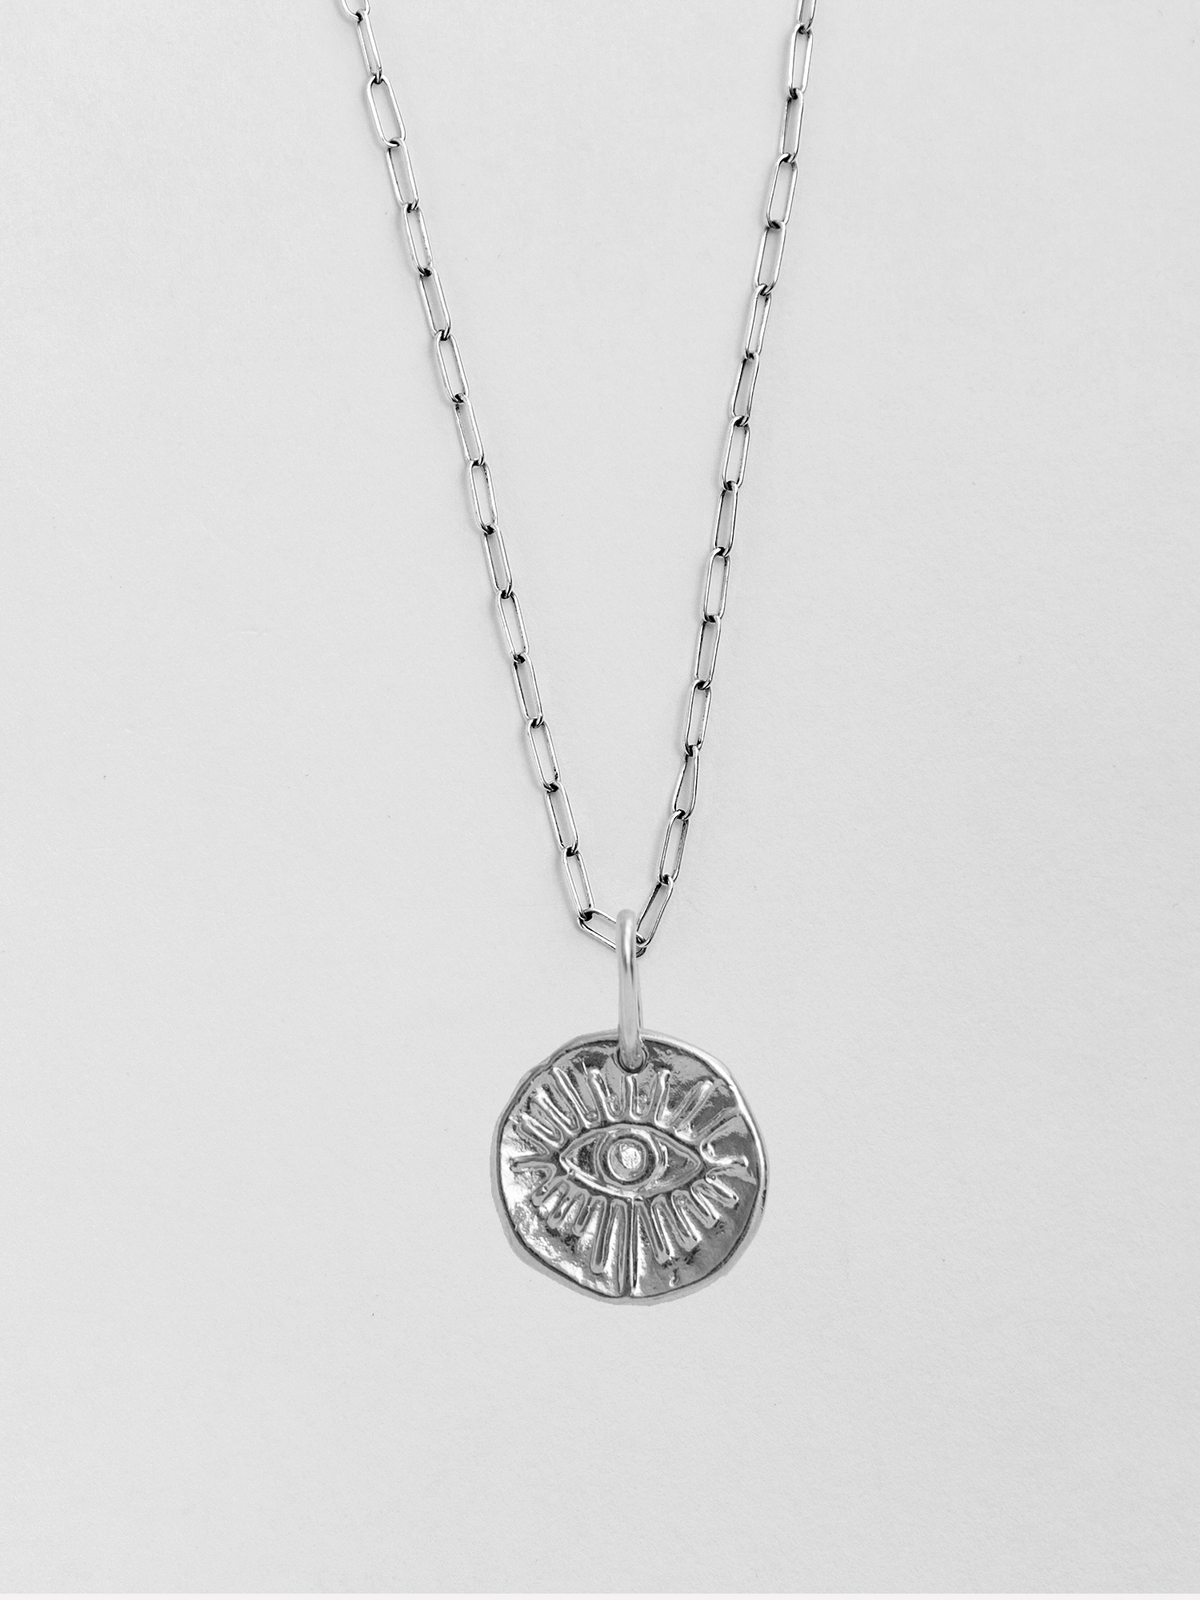 Mati Small Silver Pendant Necklace